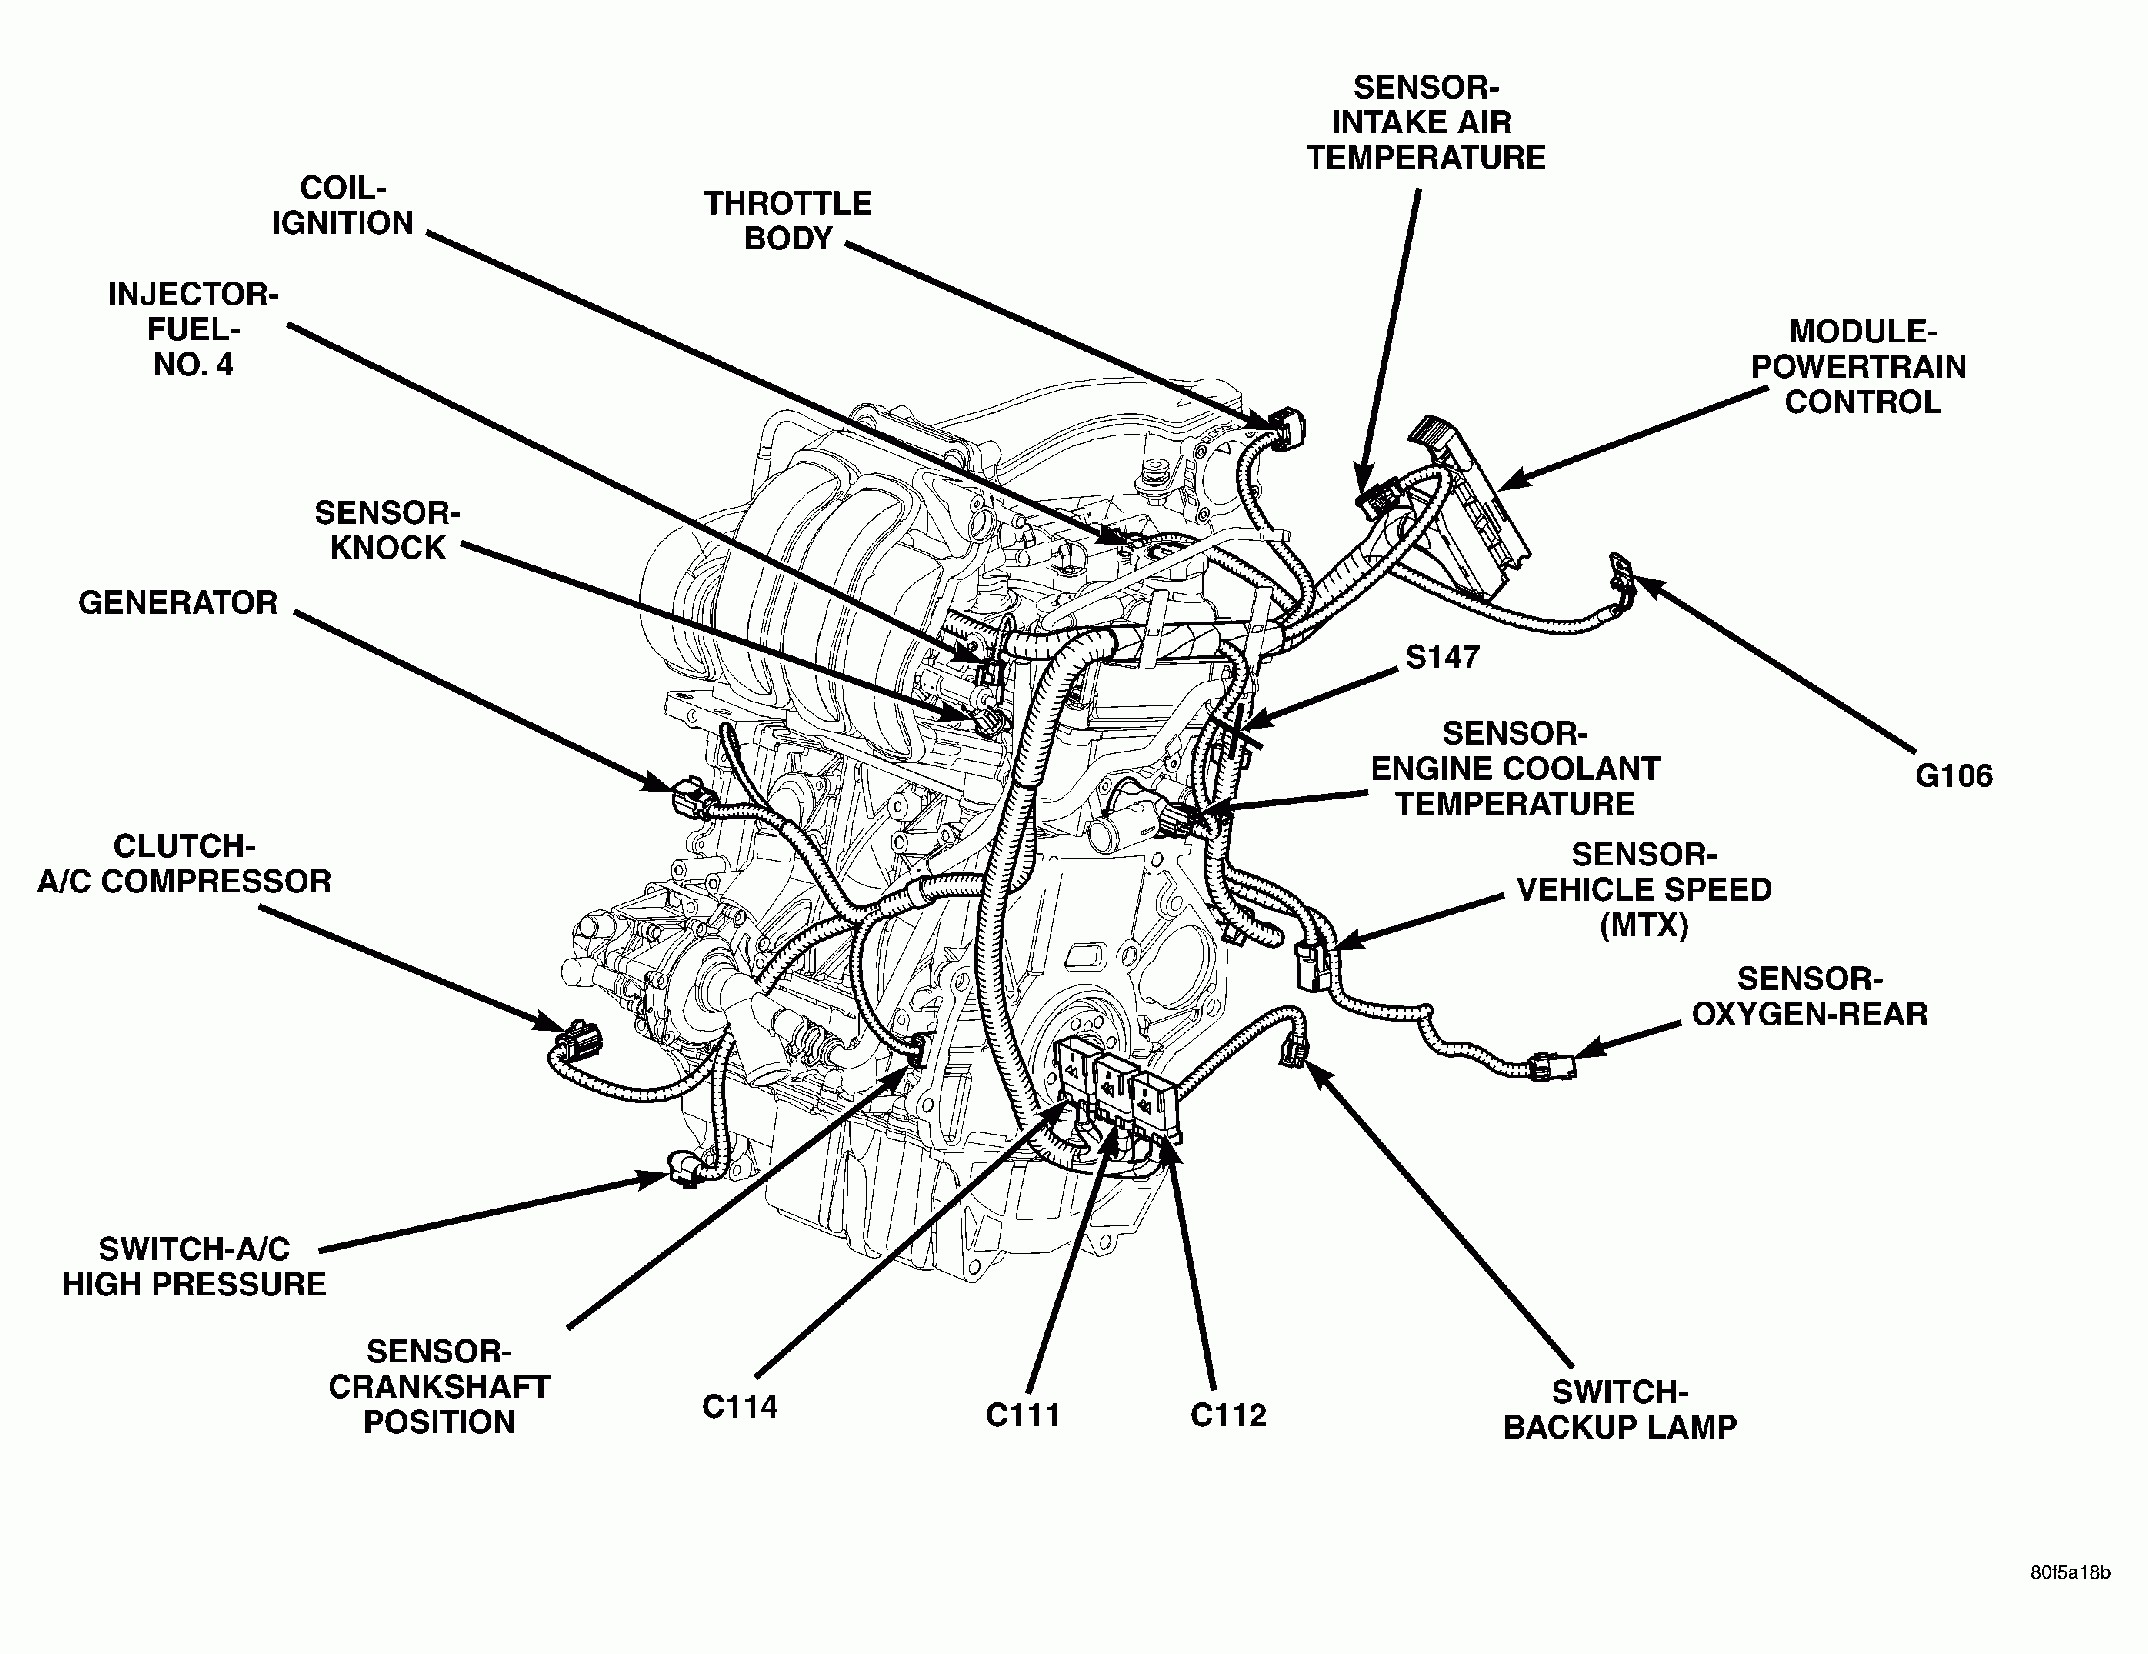 05 Chrysler Sebring Fuse Box Diagram Wiring Diagrams 2005 Pt Cruiser Engine Wiring Diagram Circuit